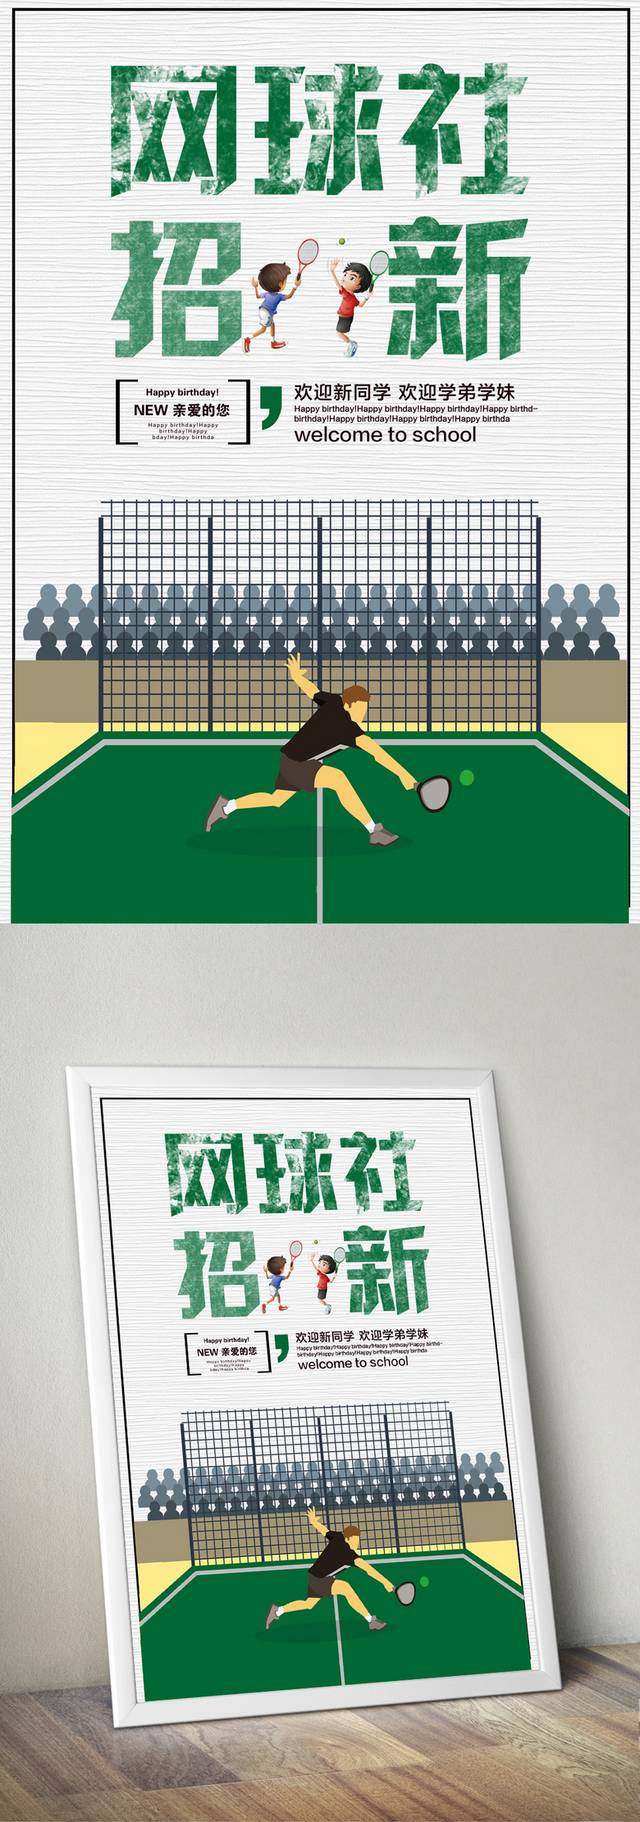 网球社招新海报模板